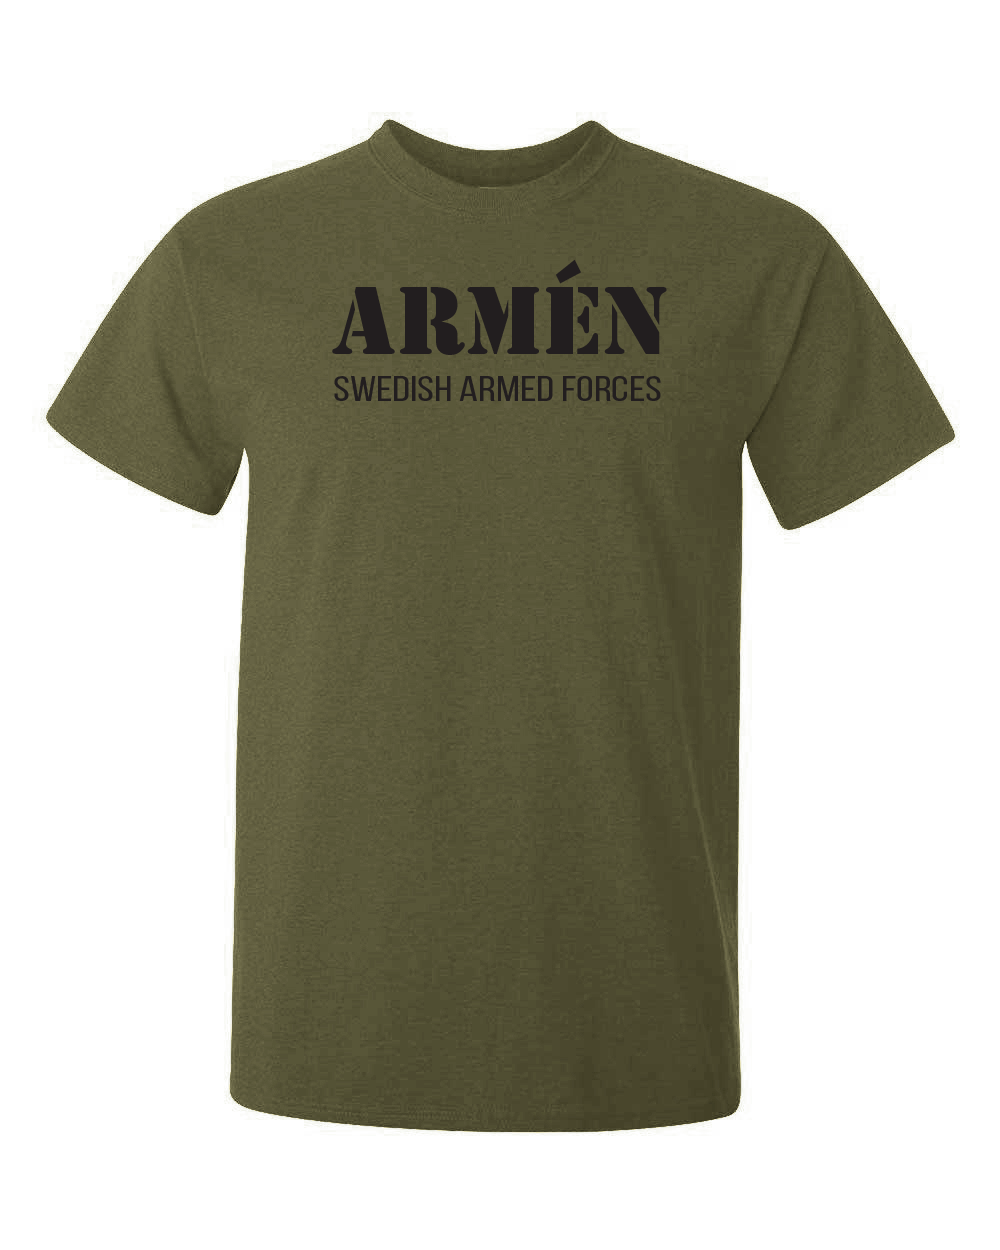 olivgrön tshirt med svarttext och texten armen swedish armed forces